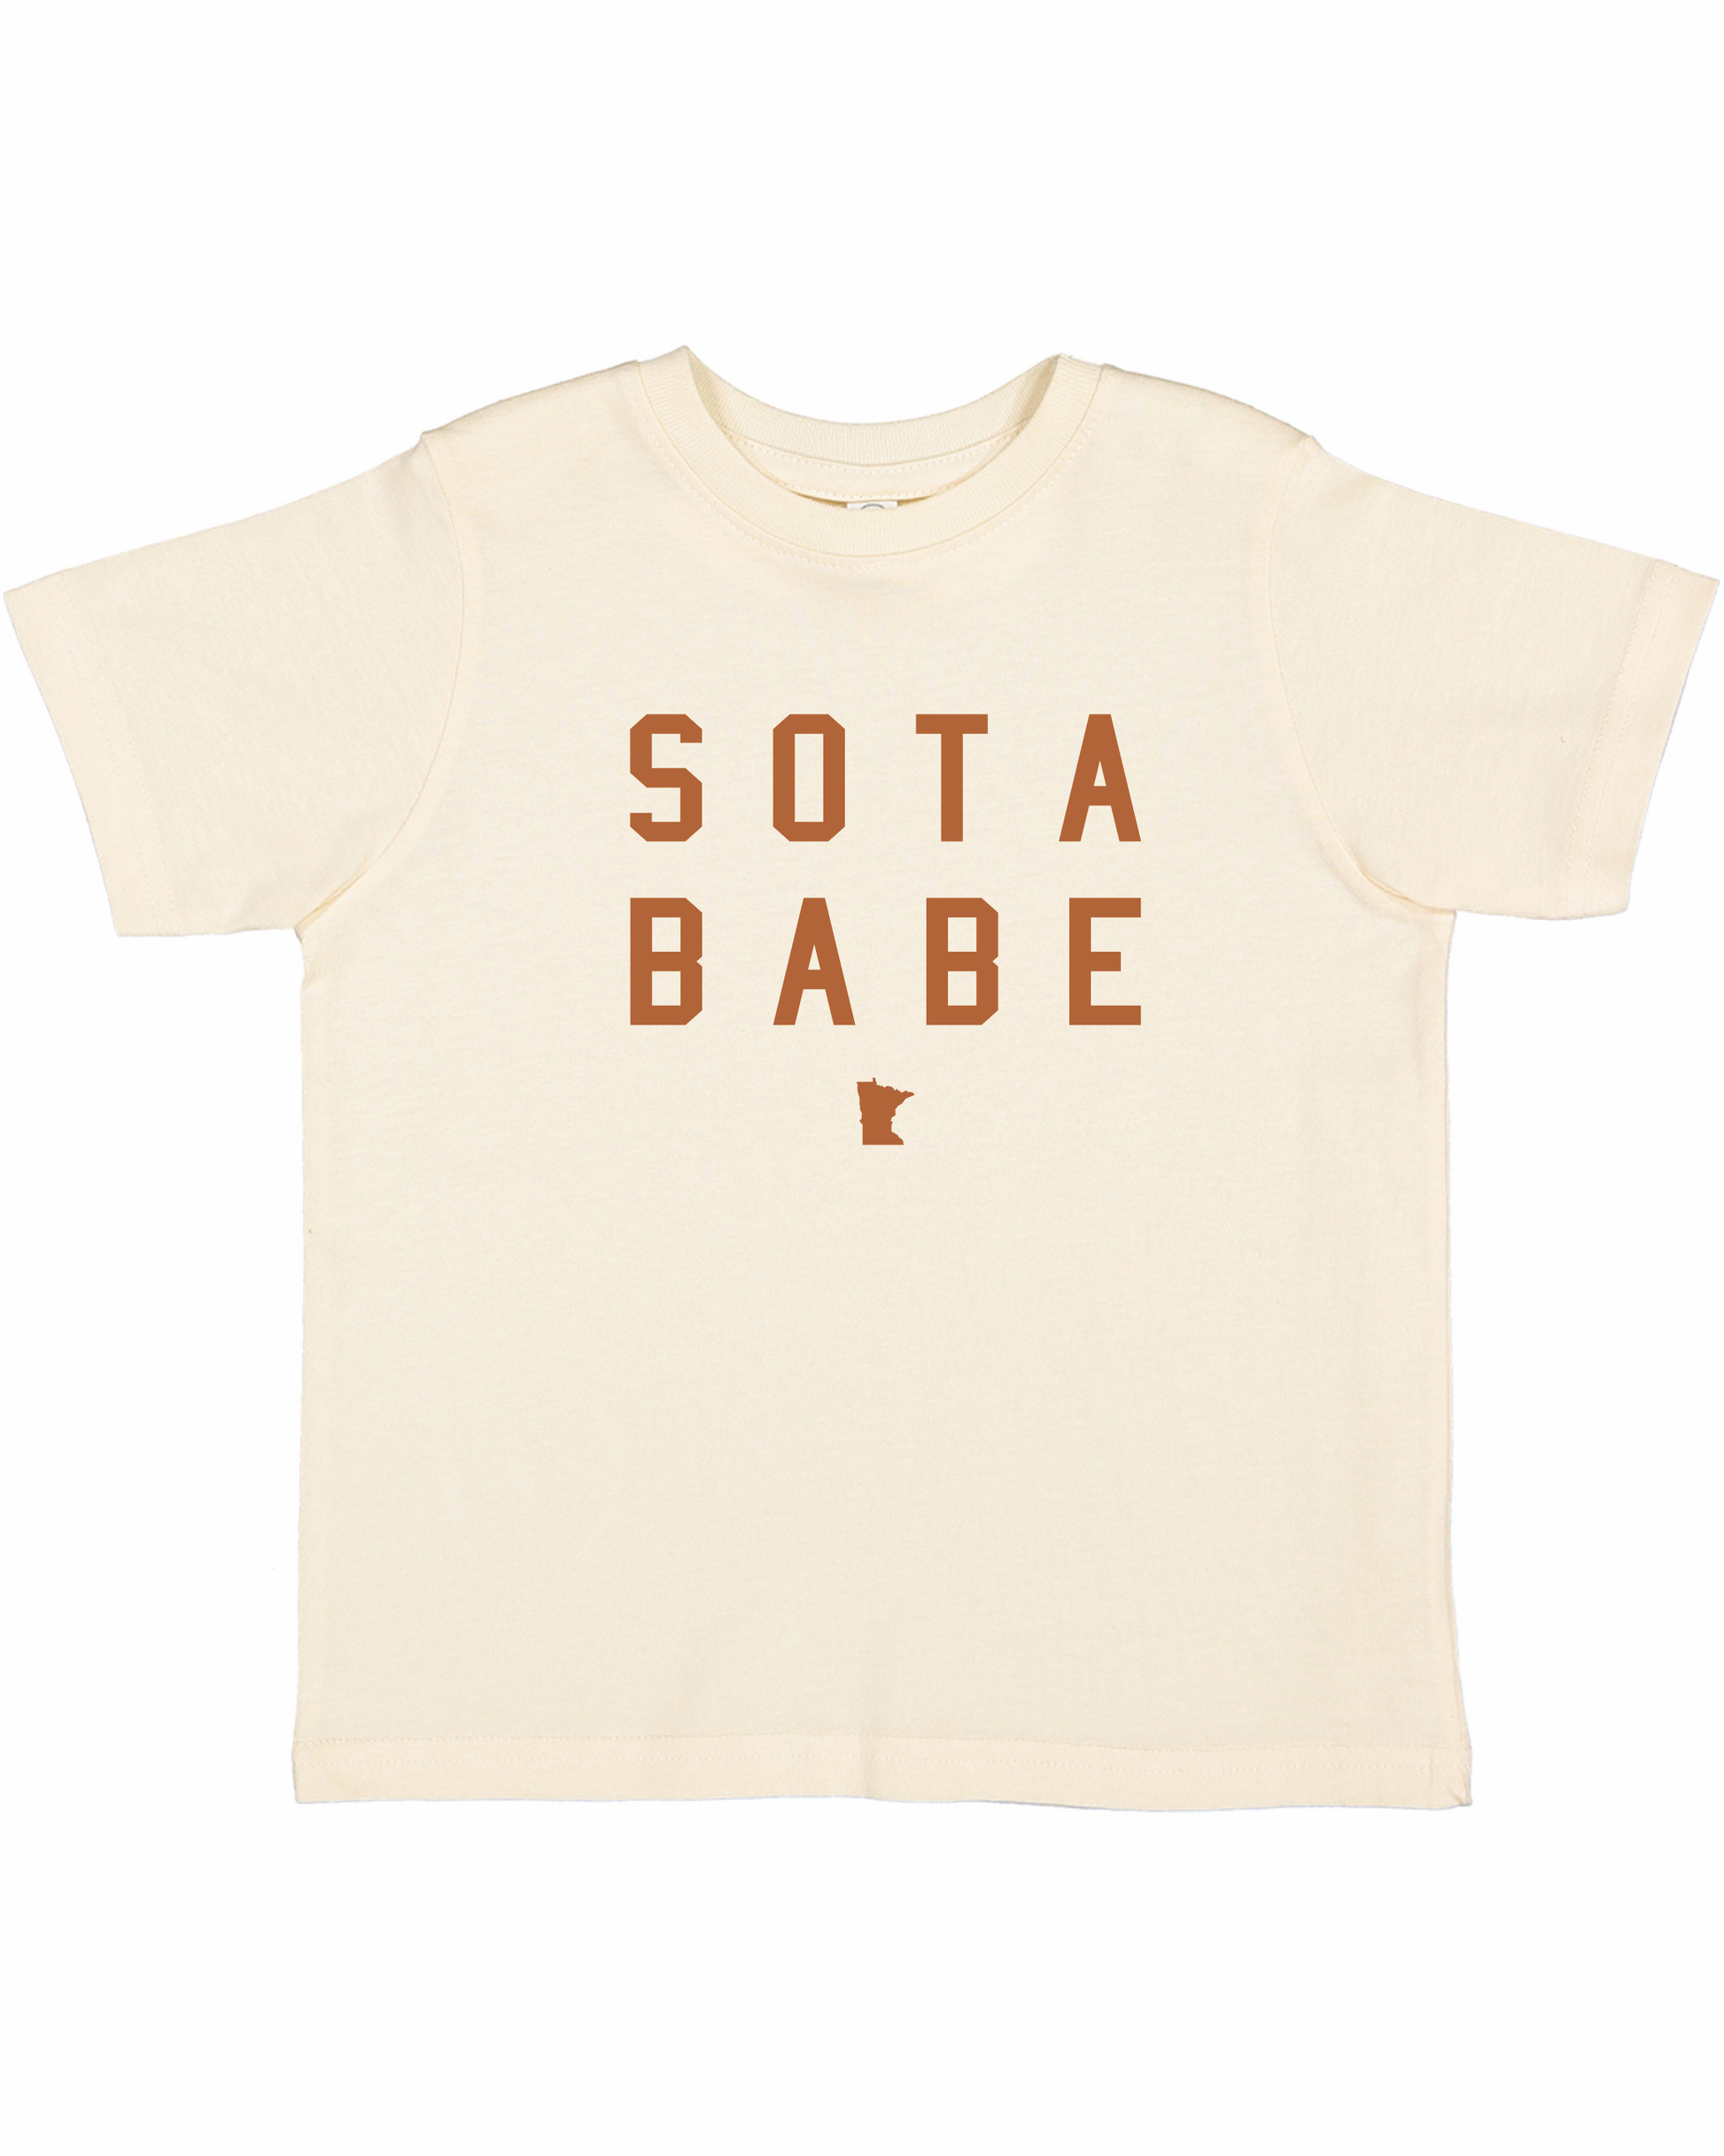 Sota Babe Toddler Tee - FINAL SALE Girls